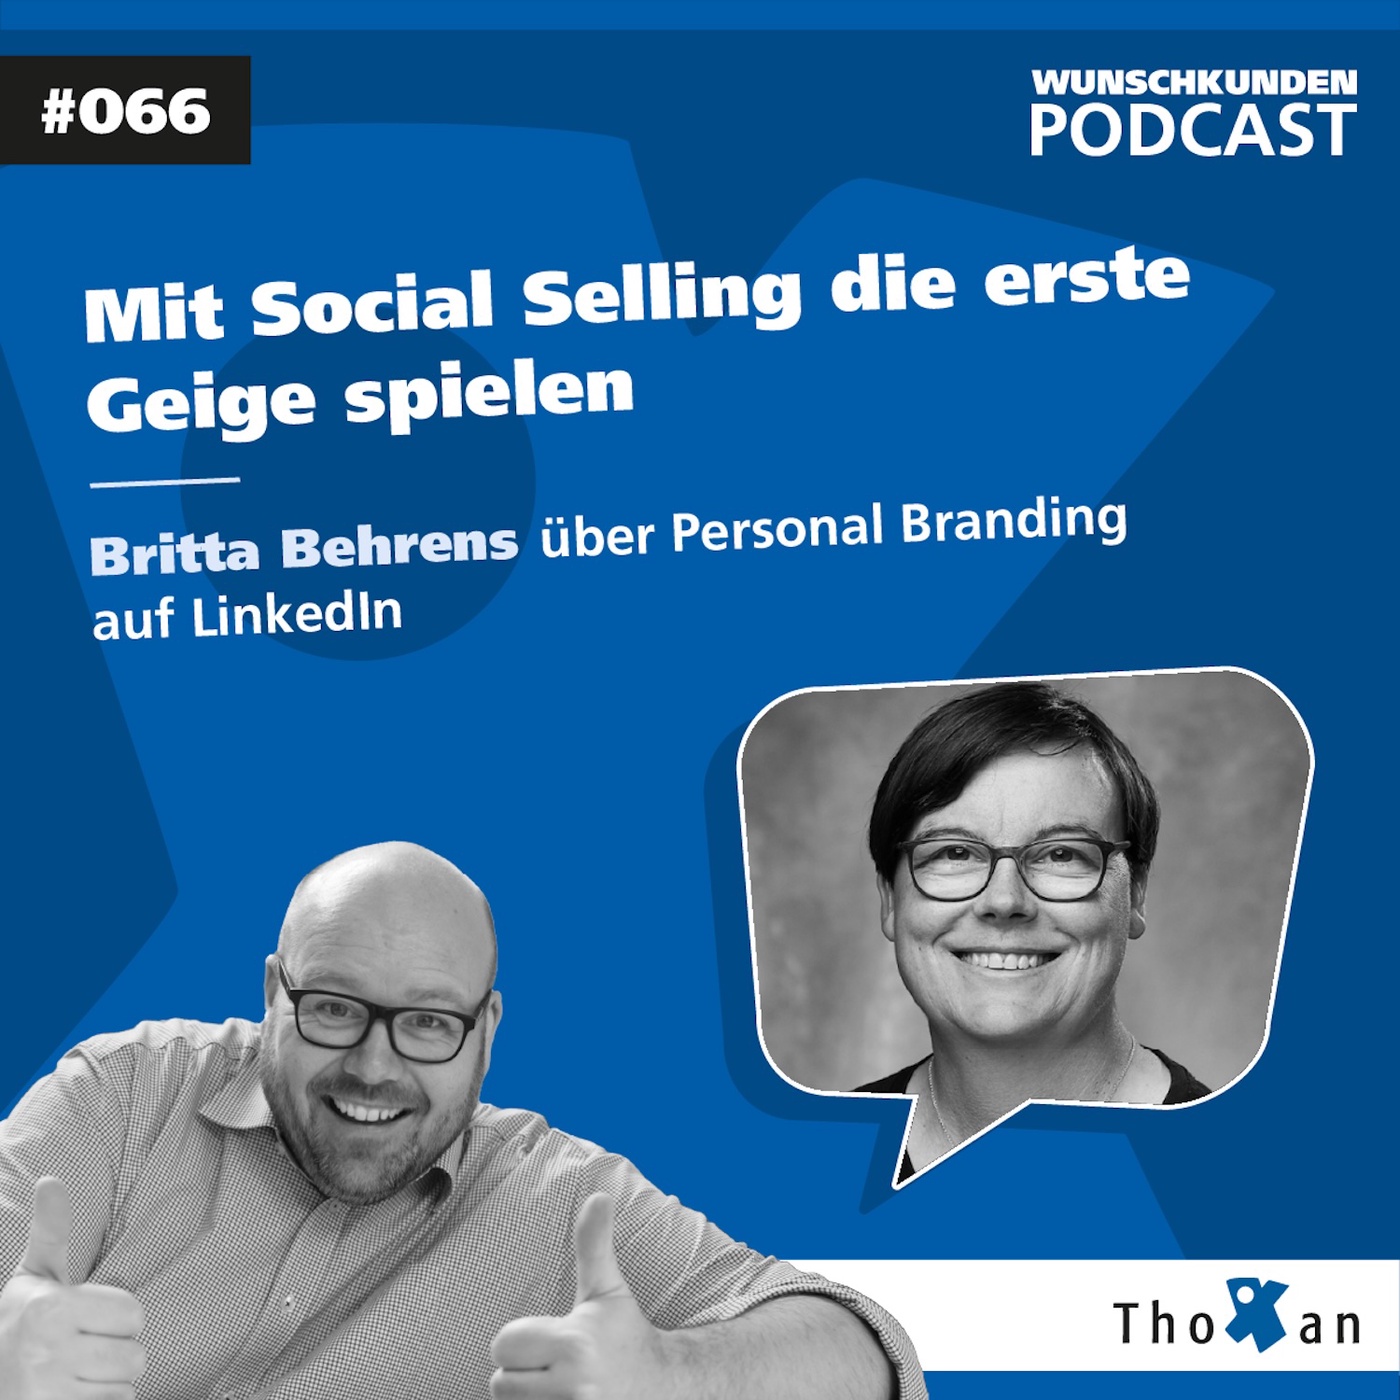 Mit Social Selling die erste Geige spielen: Britta Behrens über Personal Branding auf LinkedIn